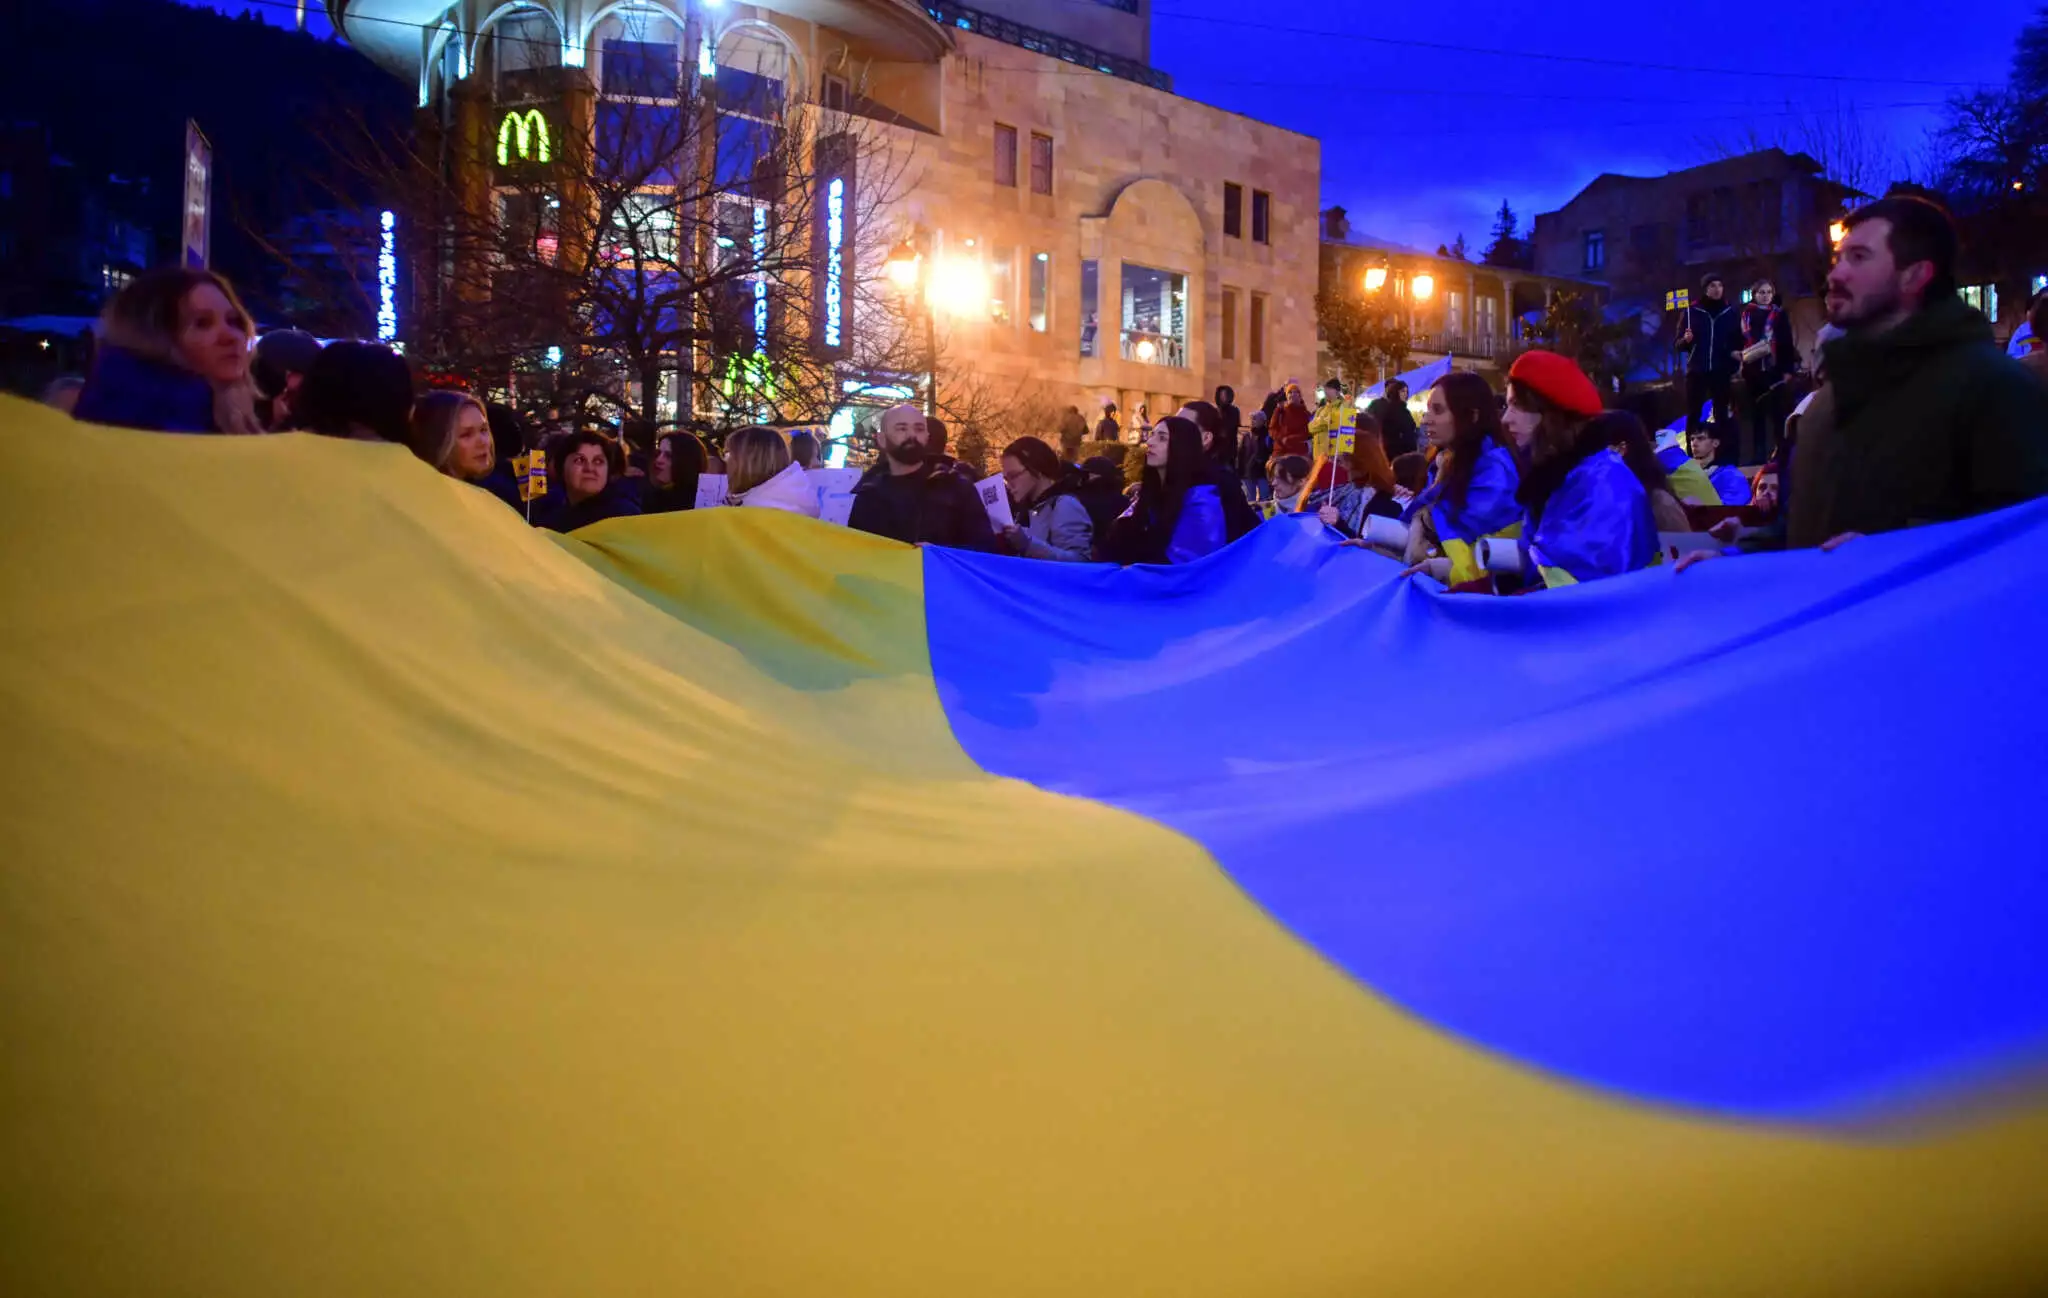 Πόλεμος στην Ουκρανία: «Βροχή» οι διαδηλώσεις κατά της Ρωσίας σε όλο τον κόσμο